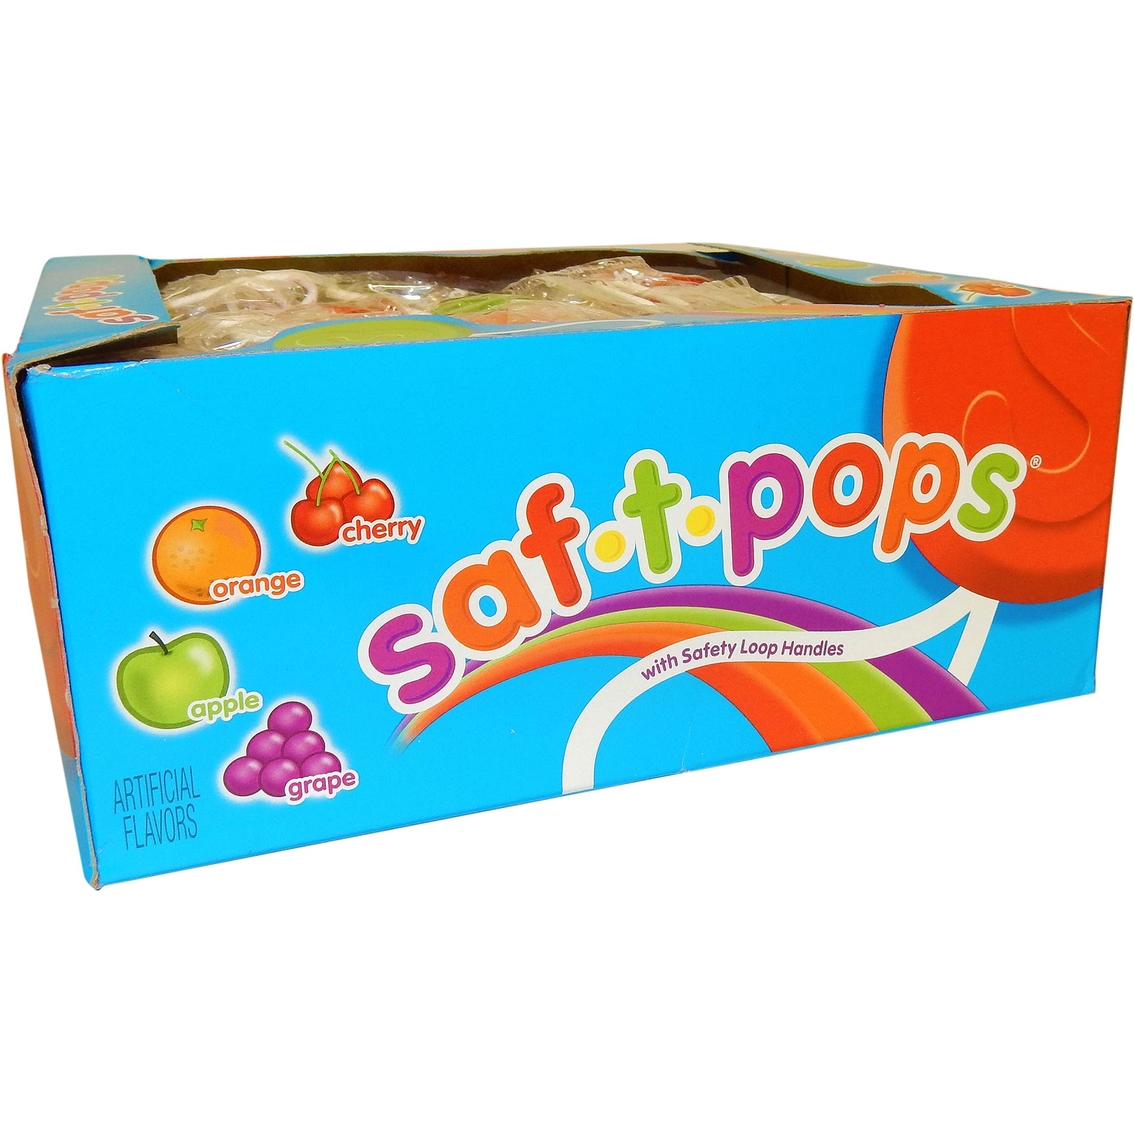 Saf-T-Pops